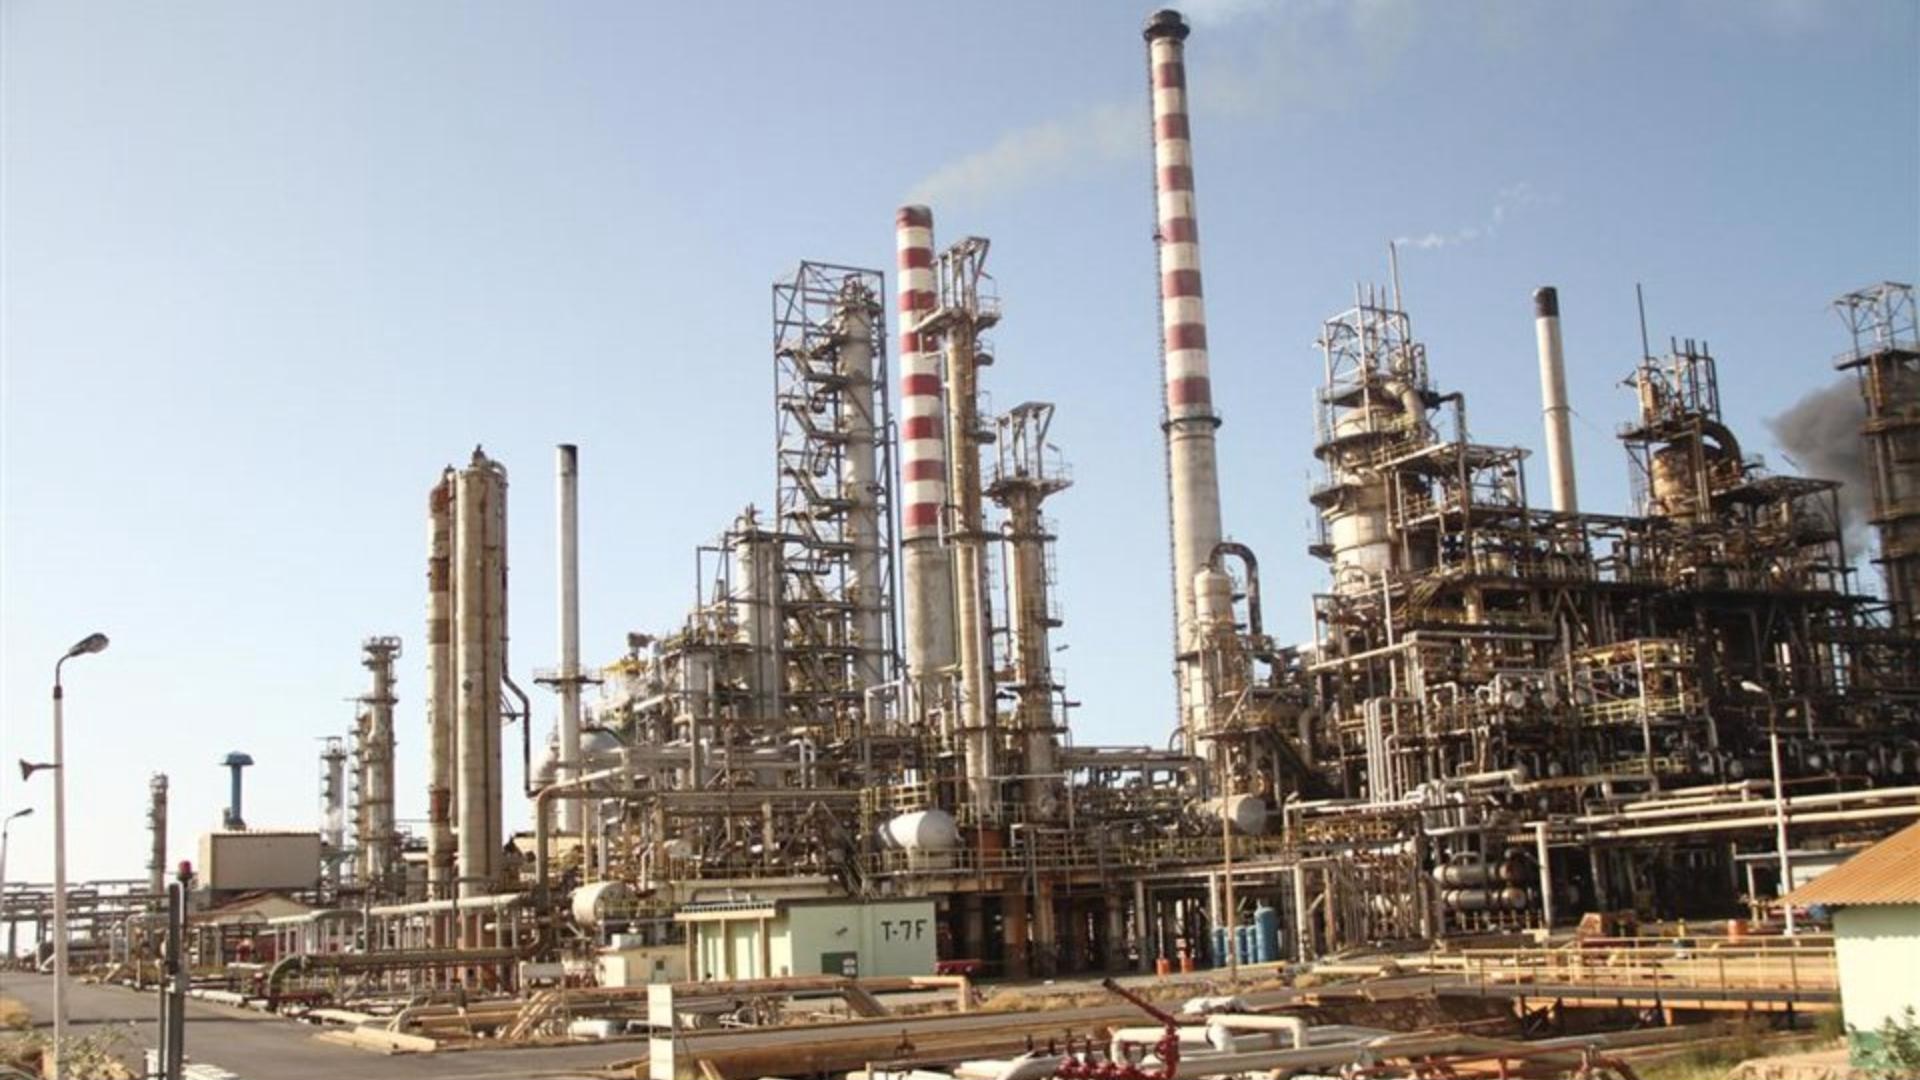 La refinería Cardón estaría produciendo de 40 a 50 mil barriles de petróleo diarios